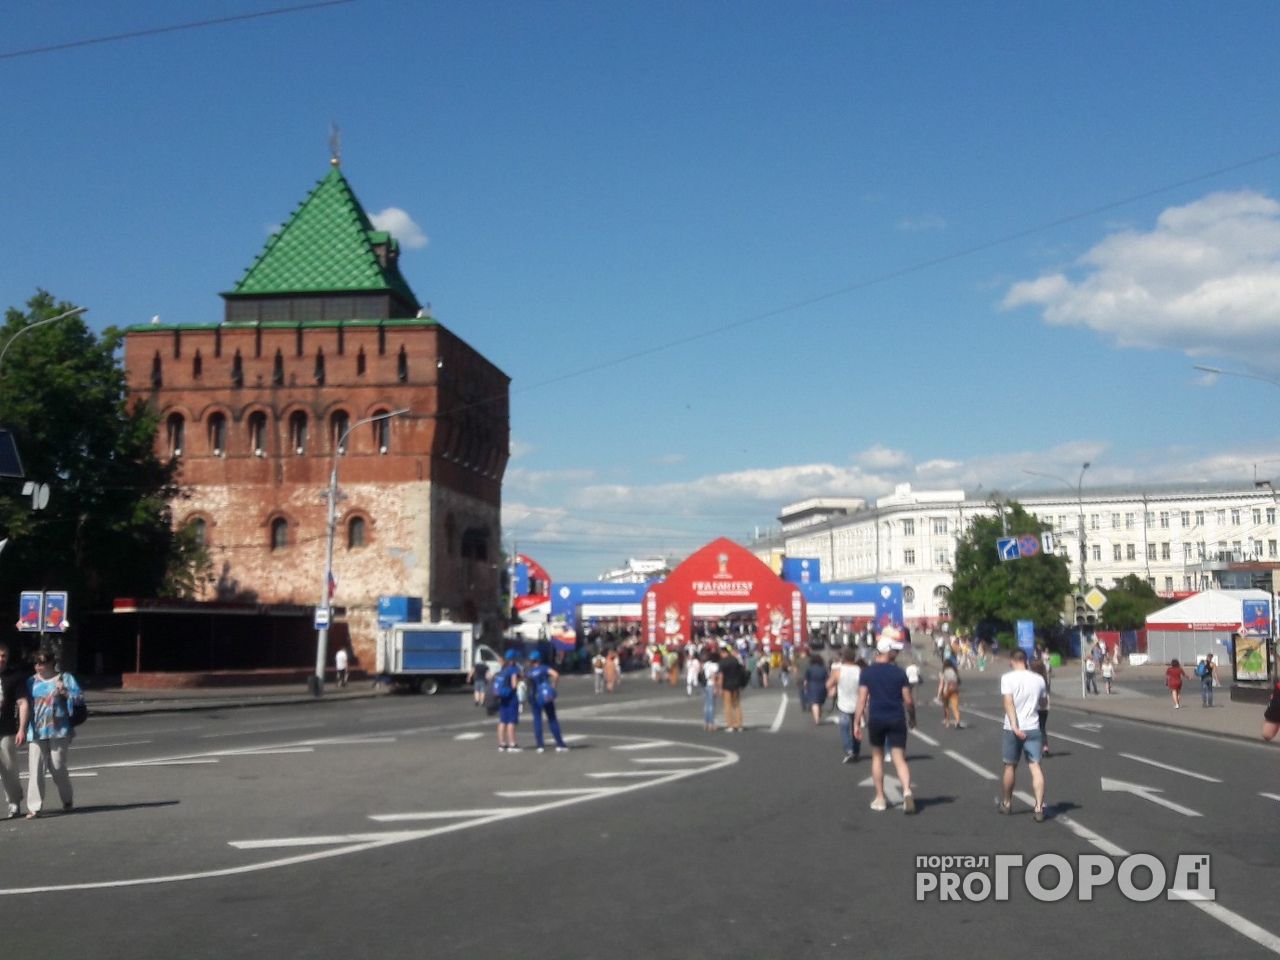 Группа Pendulum выступит на фестивале FIFA в Нижнем Новгороде 21 июня